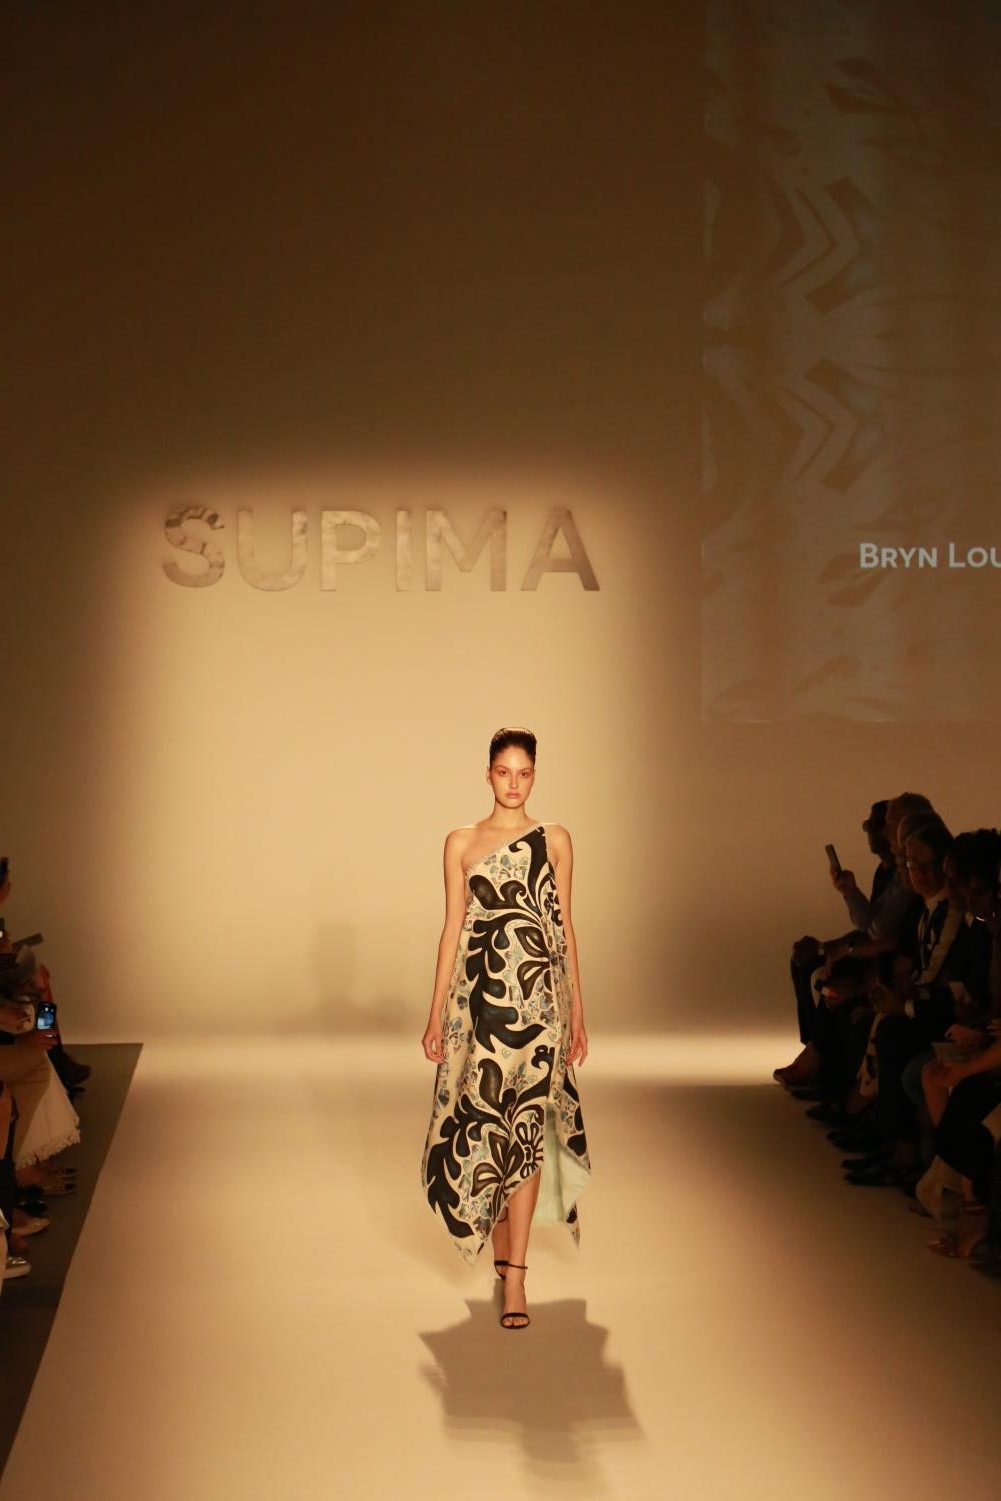 Supima+Design+Competition+S%2FS+2019